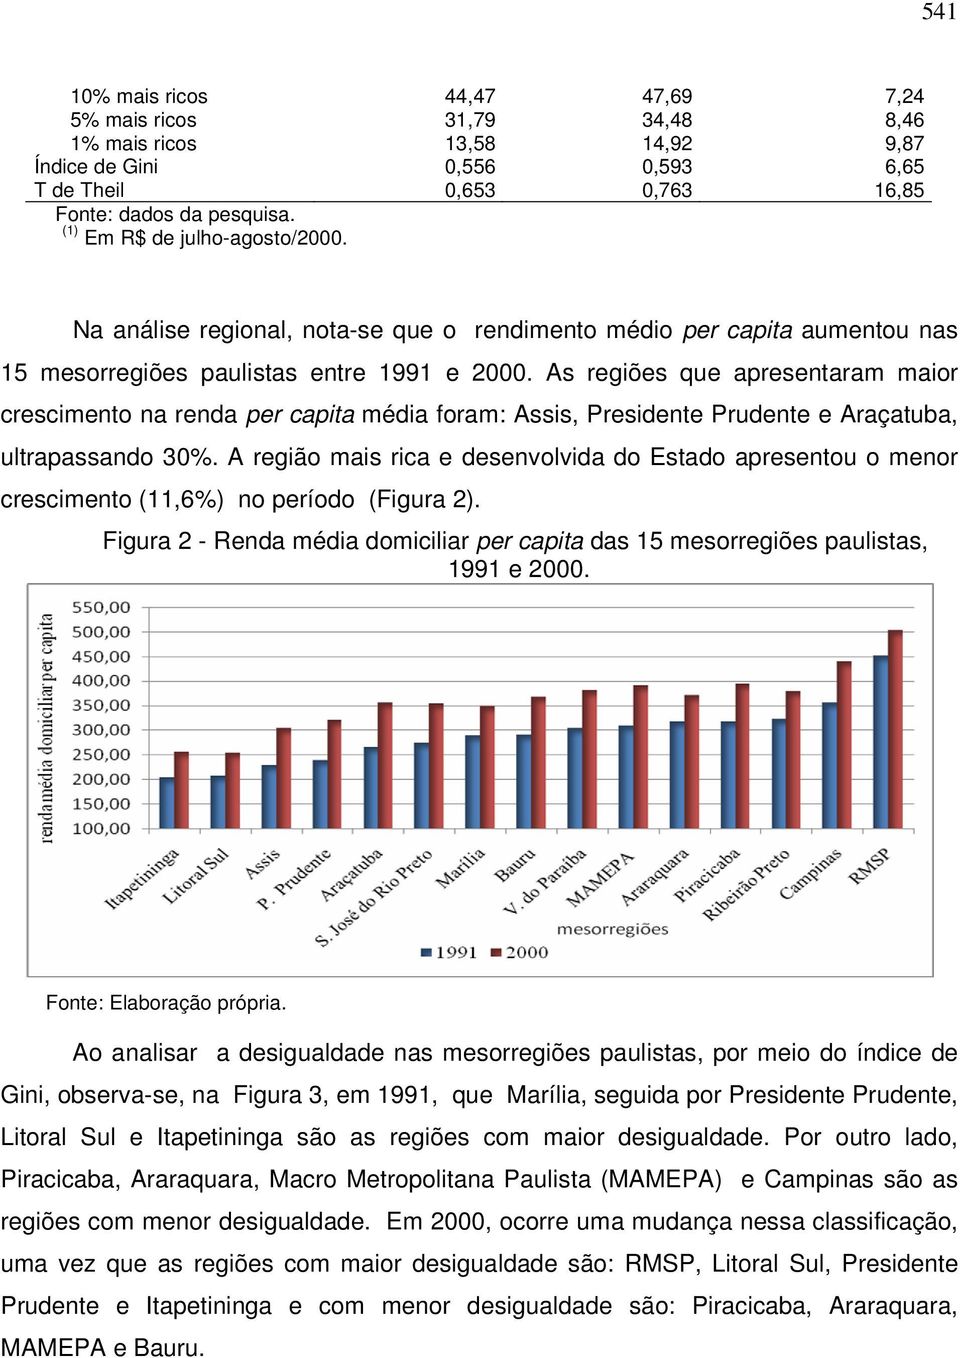 As regiões que apresentaram maior crescimento na renda per capita média foram: Assis, Presidente Prudente e Araçatuba, ultrapassando 30%.